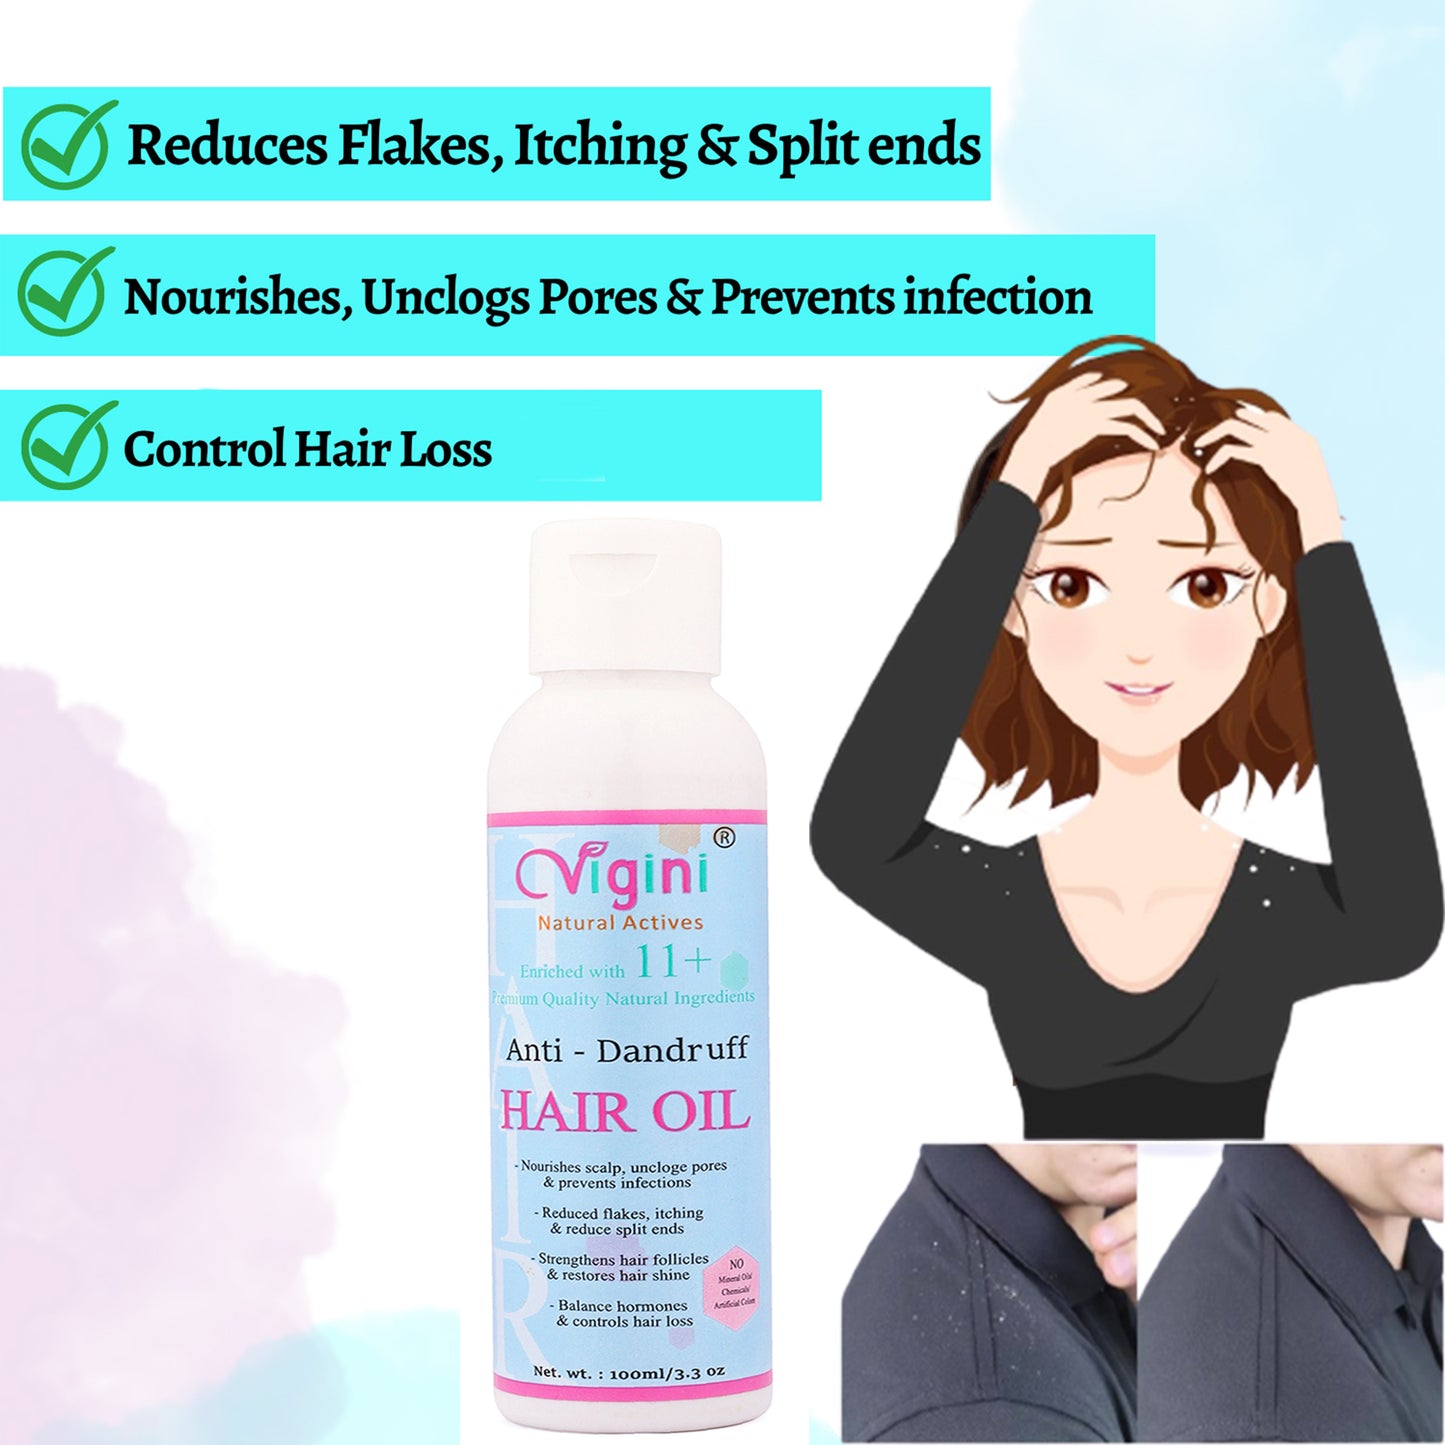 Vigini Anti-Dandruff Pre Shampoo Hair Oil, 100ml